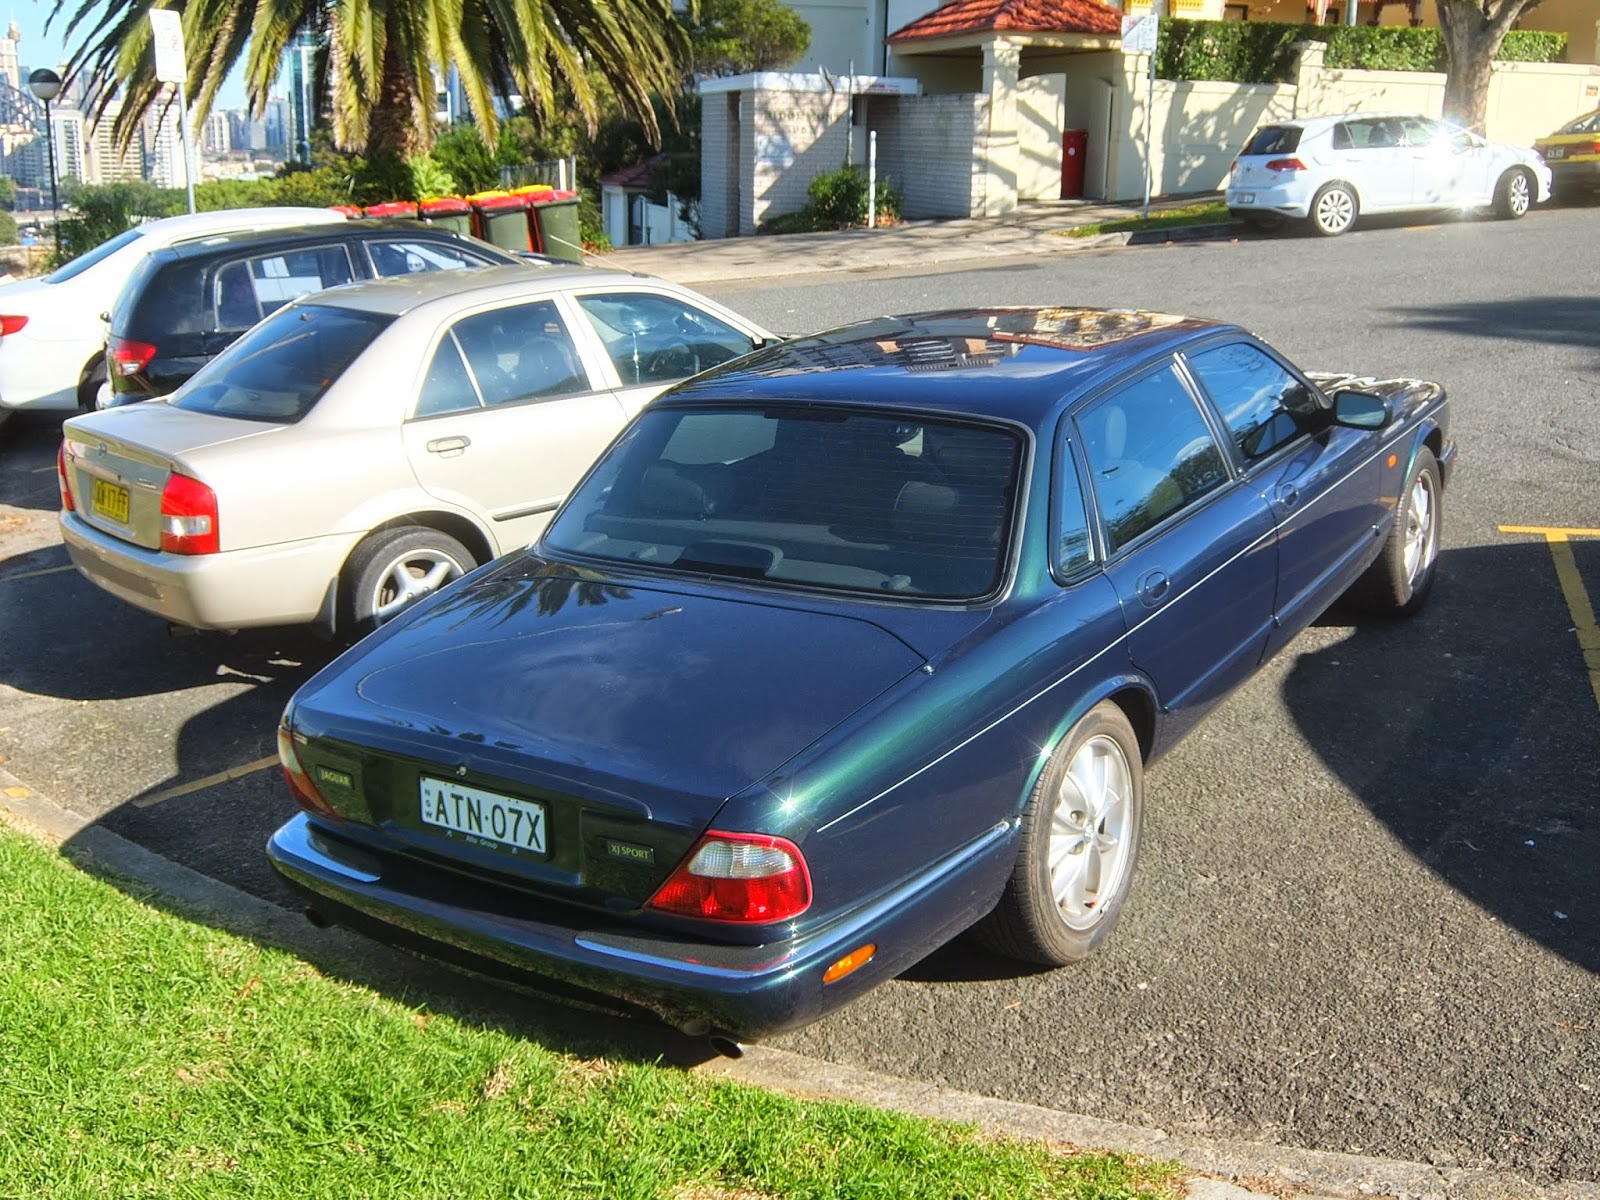 Aussie Old Parked Cars: 2000 Jaguar XJ8 Sport (X308)